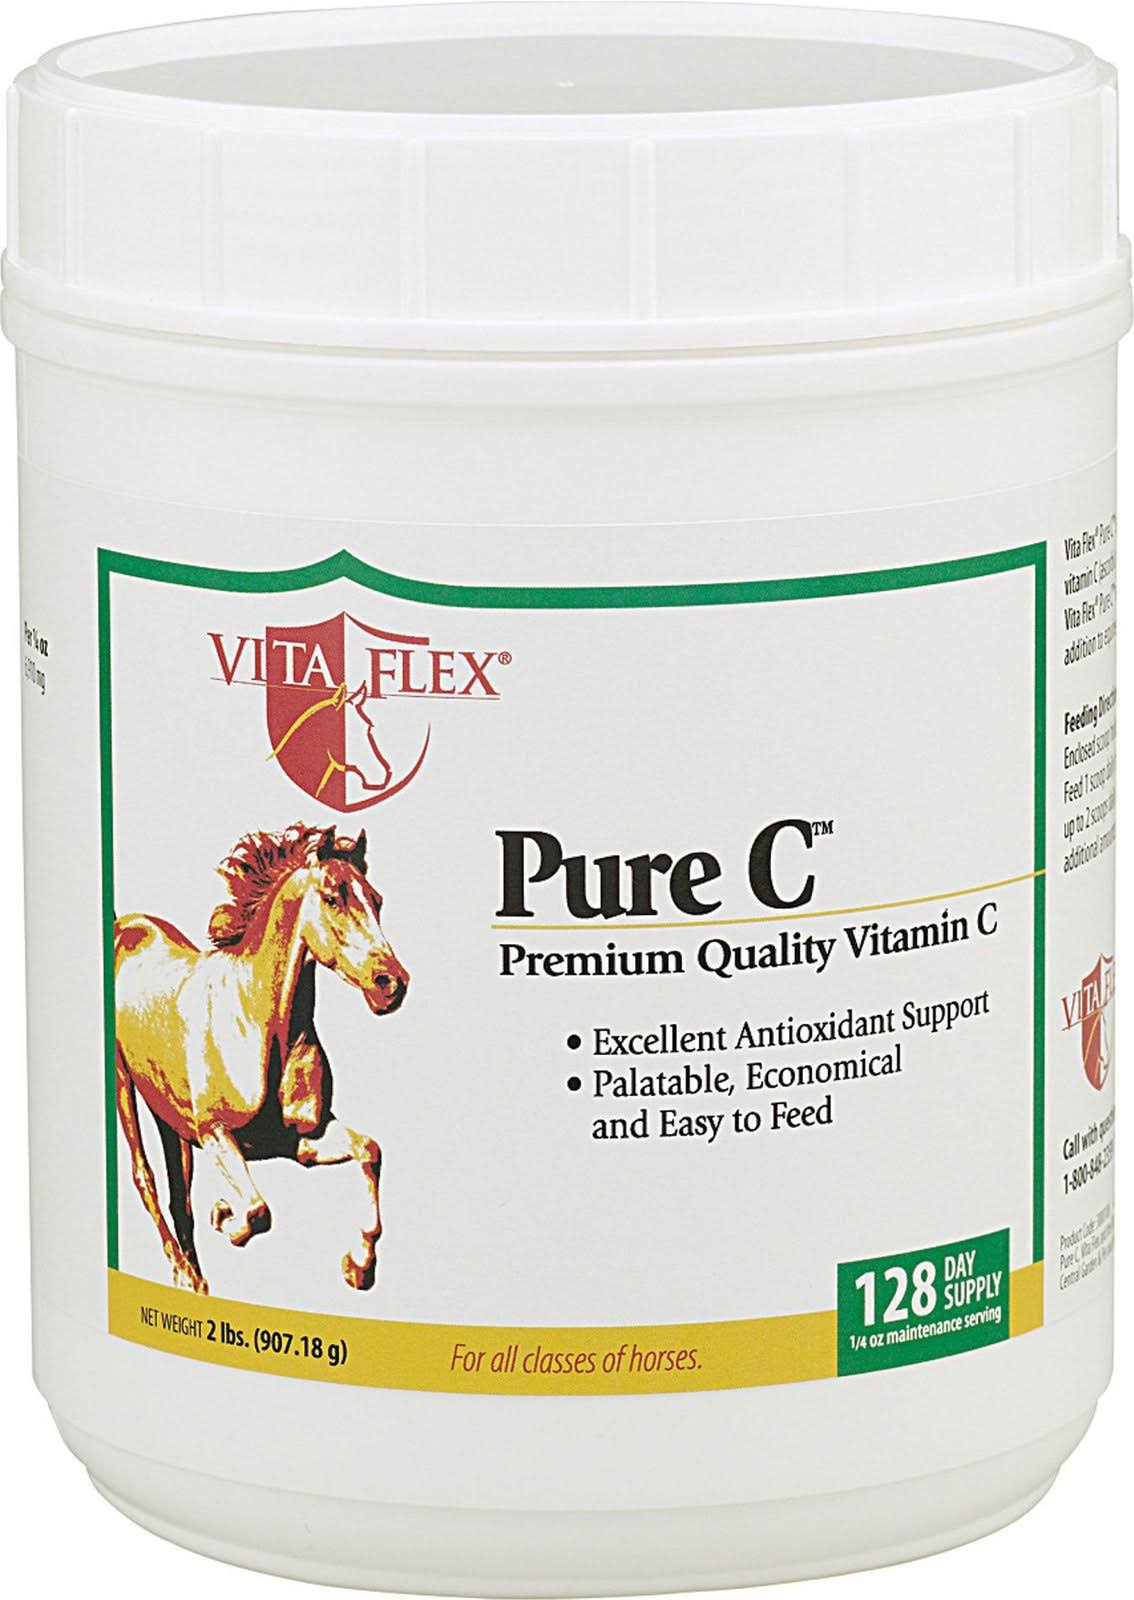 Farnam Pure C Premium Vitamin C Supplement for Horses, 2lb / 128 Days